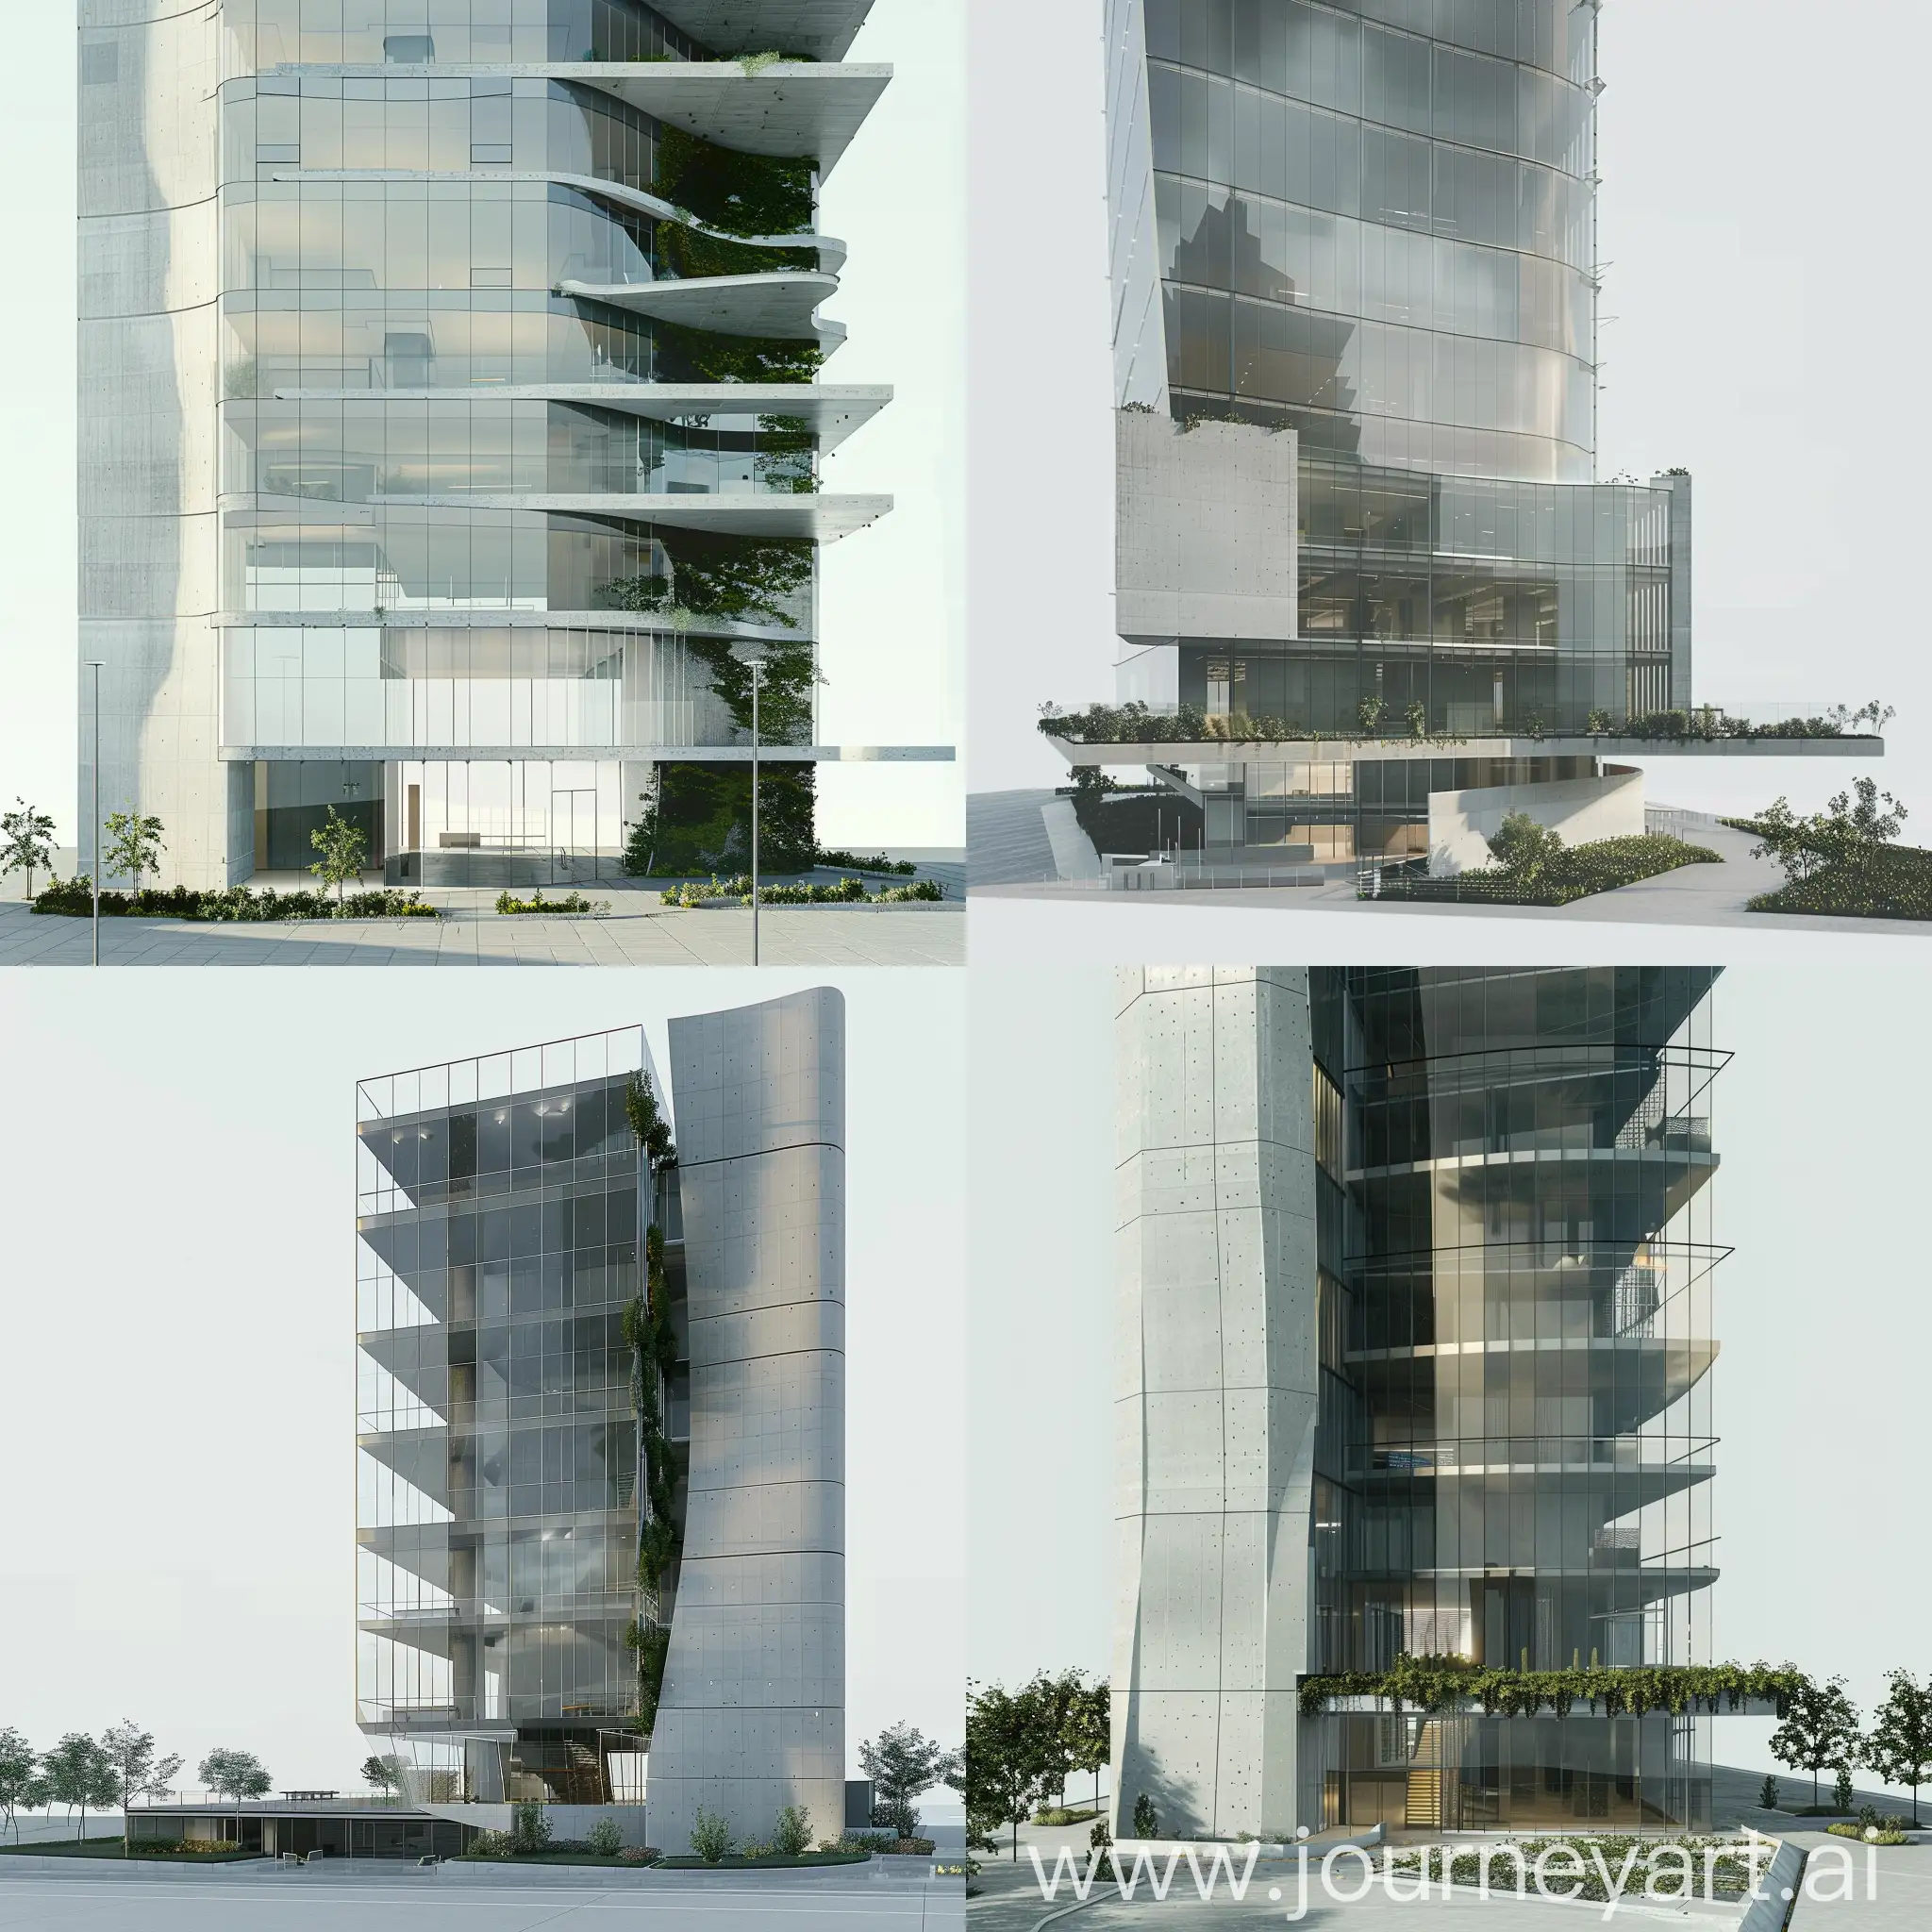 создай фотореалистичную визуализацию здания с использованием стеклянного фасада, бетона и озеленения